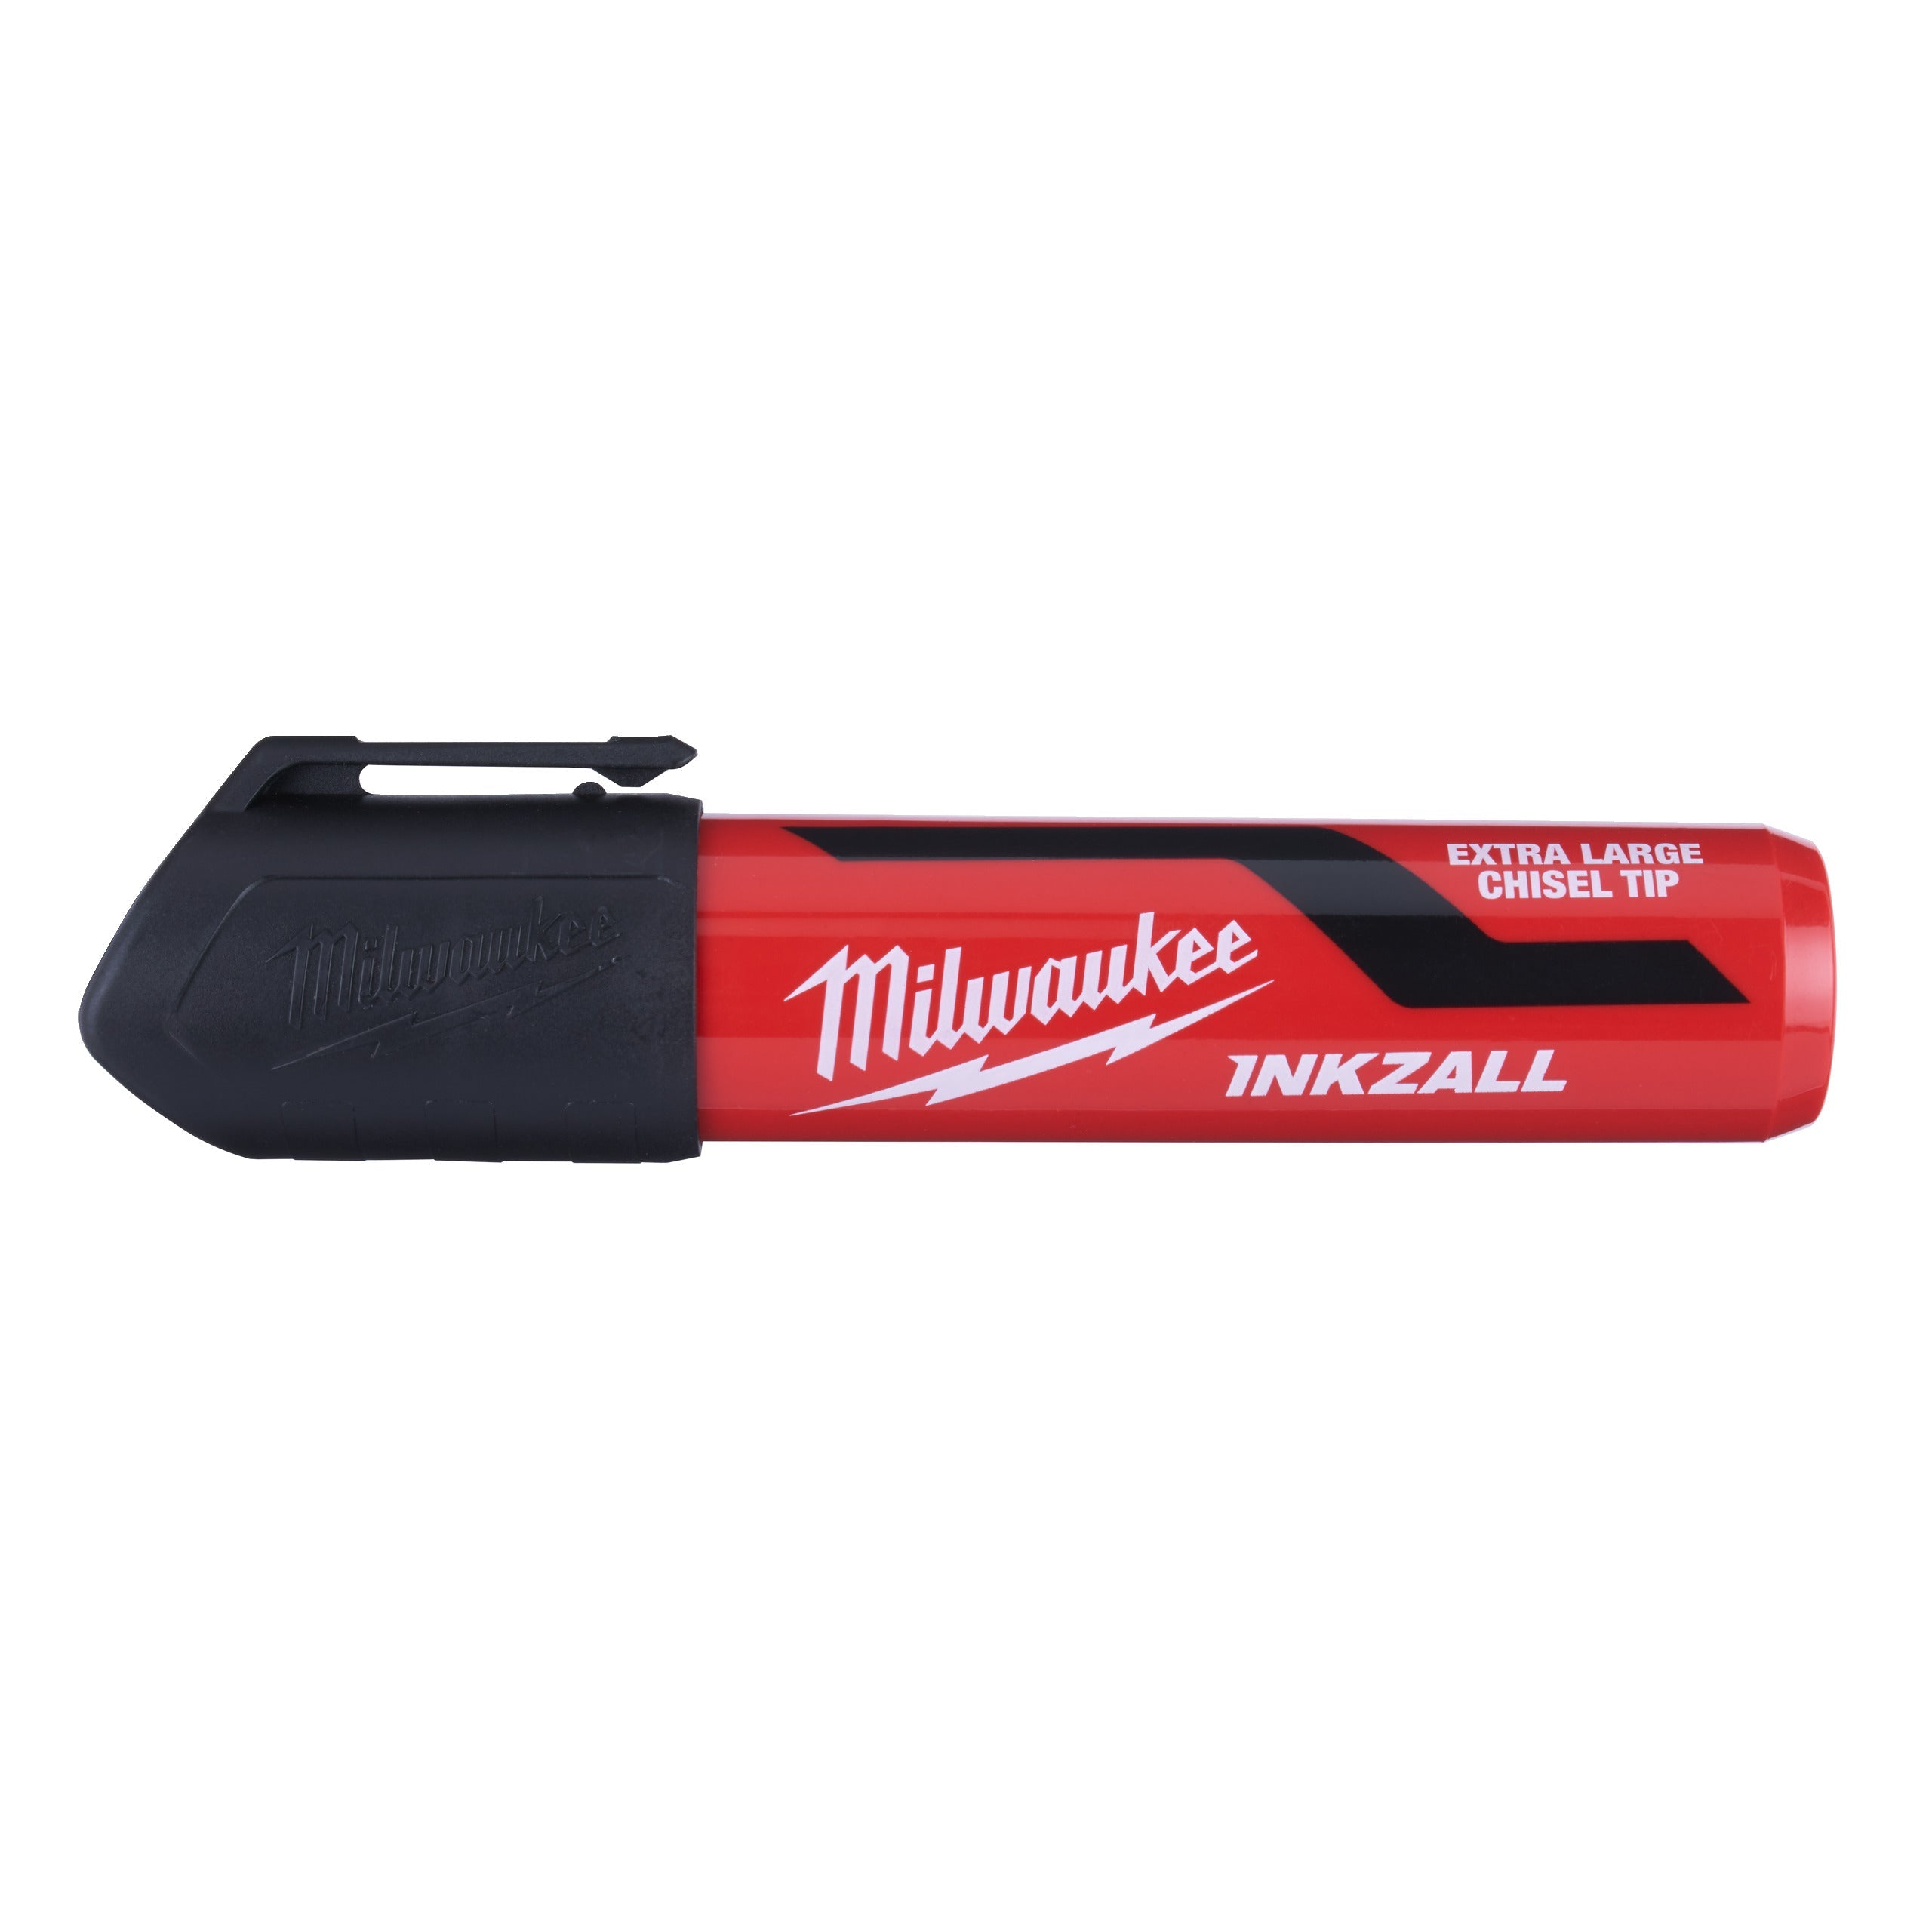 Marker INKZALL™ cu vârf lat negru, XL, Milwaukee cod 4932471559